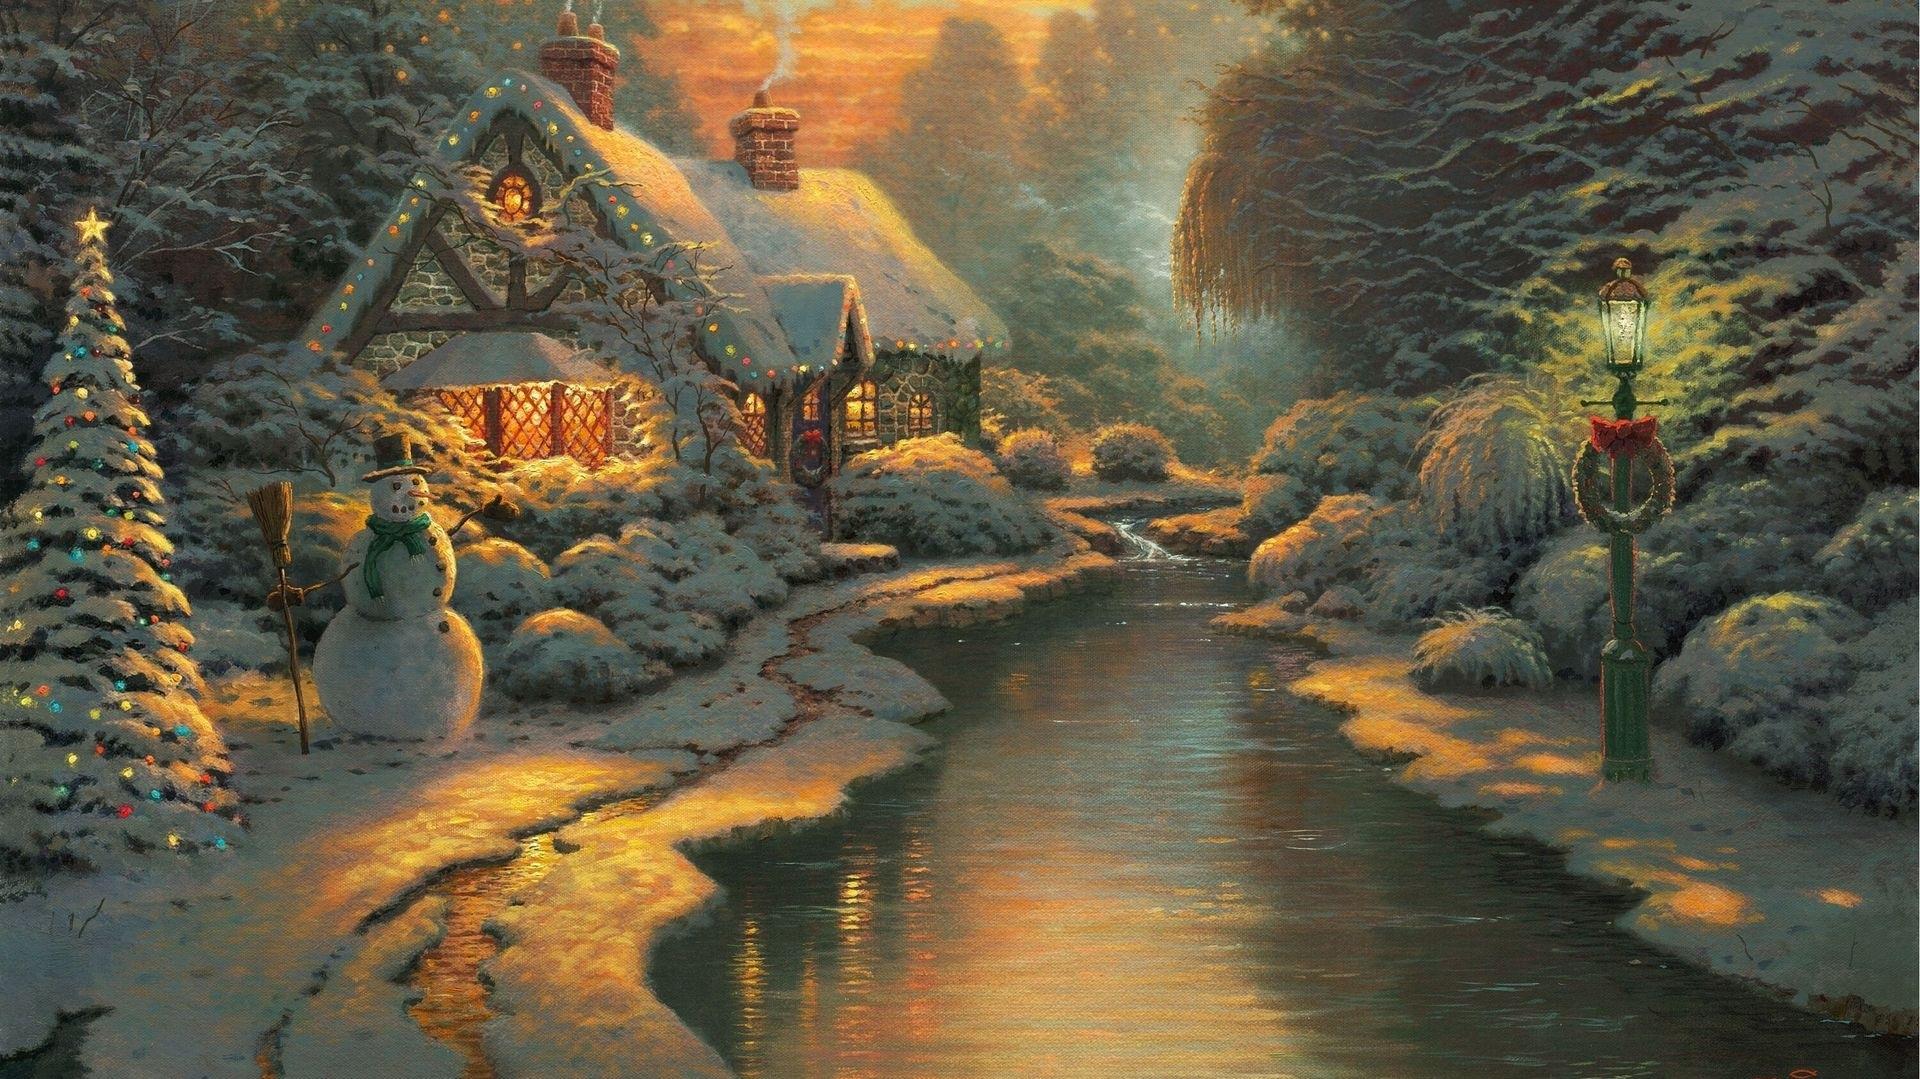 Hãy đắm mình vào một thế giới ảo diệu đầy màu sắc và sự sống động, với hình nền Giáng Sinh mang phong cách Thomas Kinkade đẹp lung linh và đầy ấm áp. Một mùa Giáng Sinh tràn đầy niềm vui và hạnh phúc đang chờ đón bạn đấy!